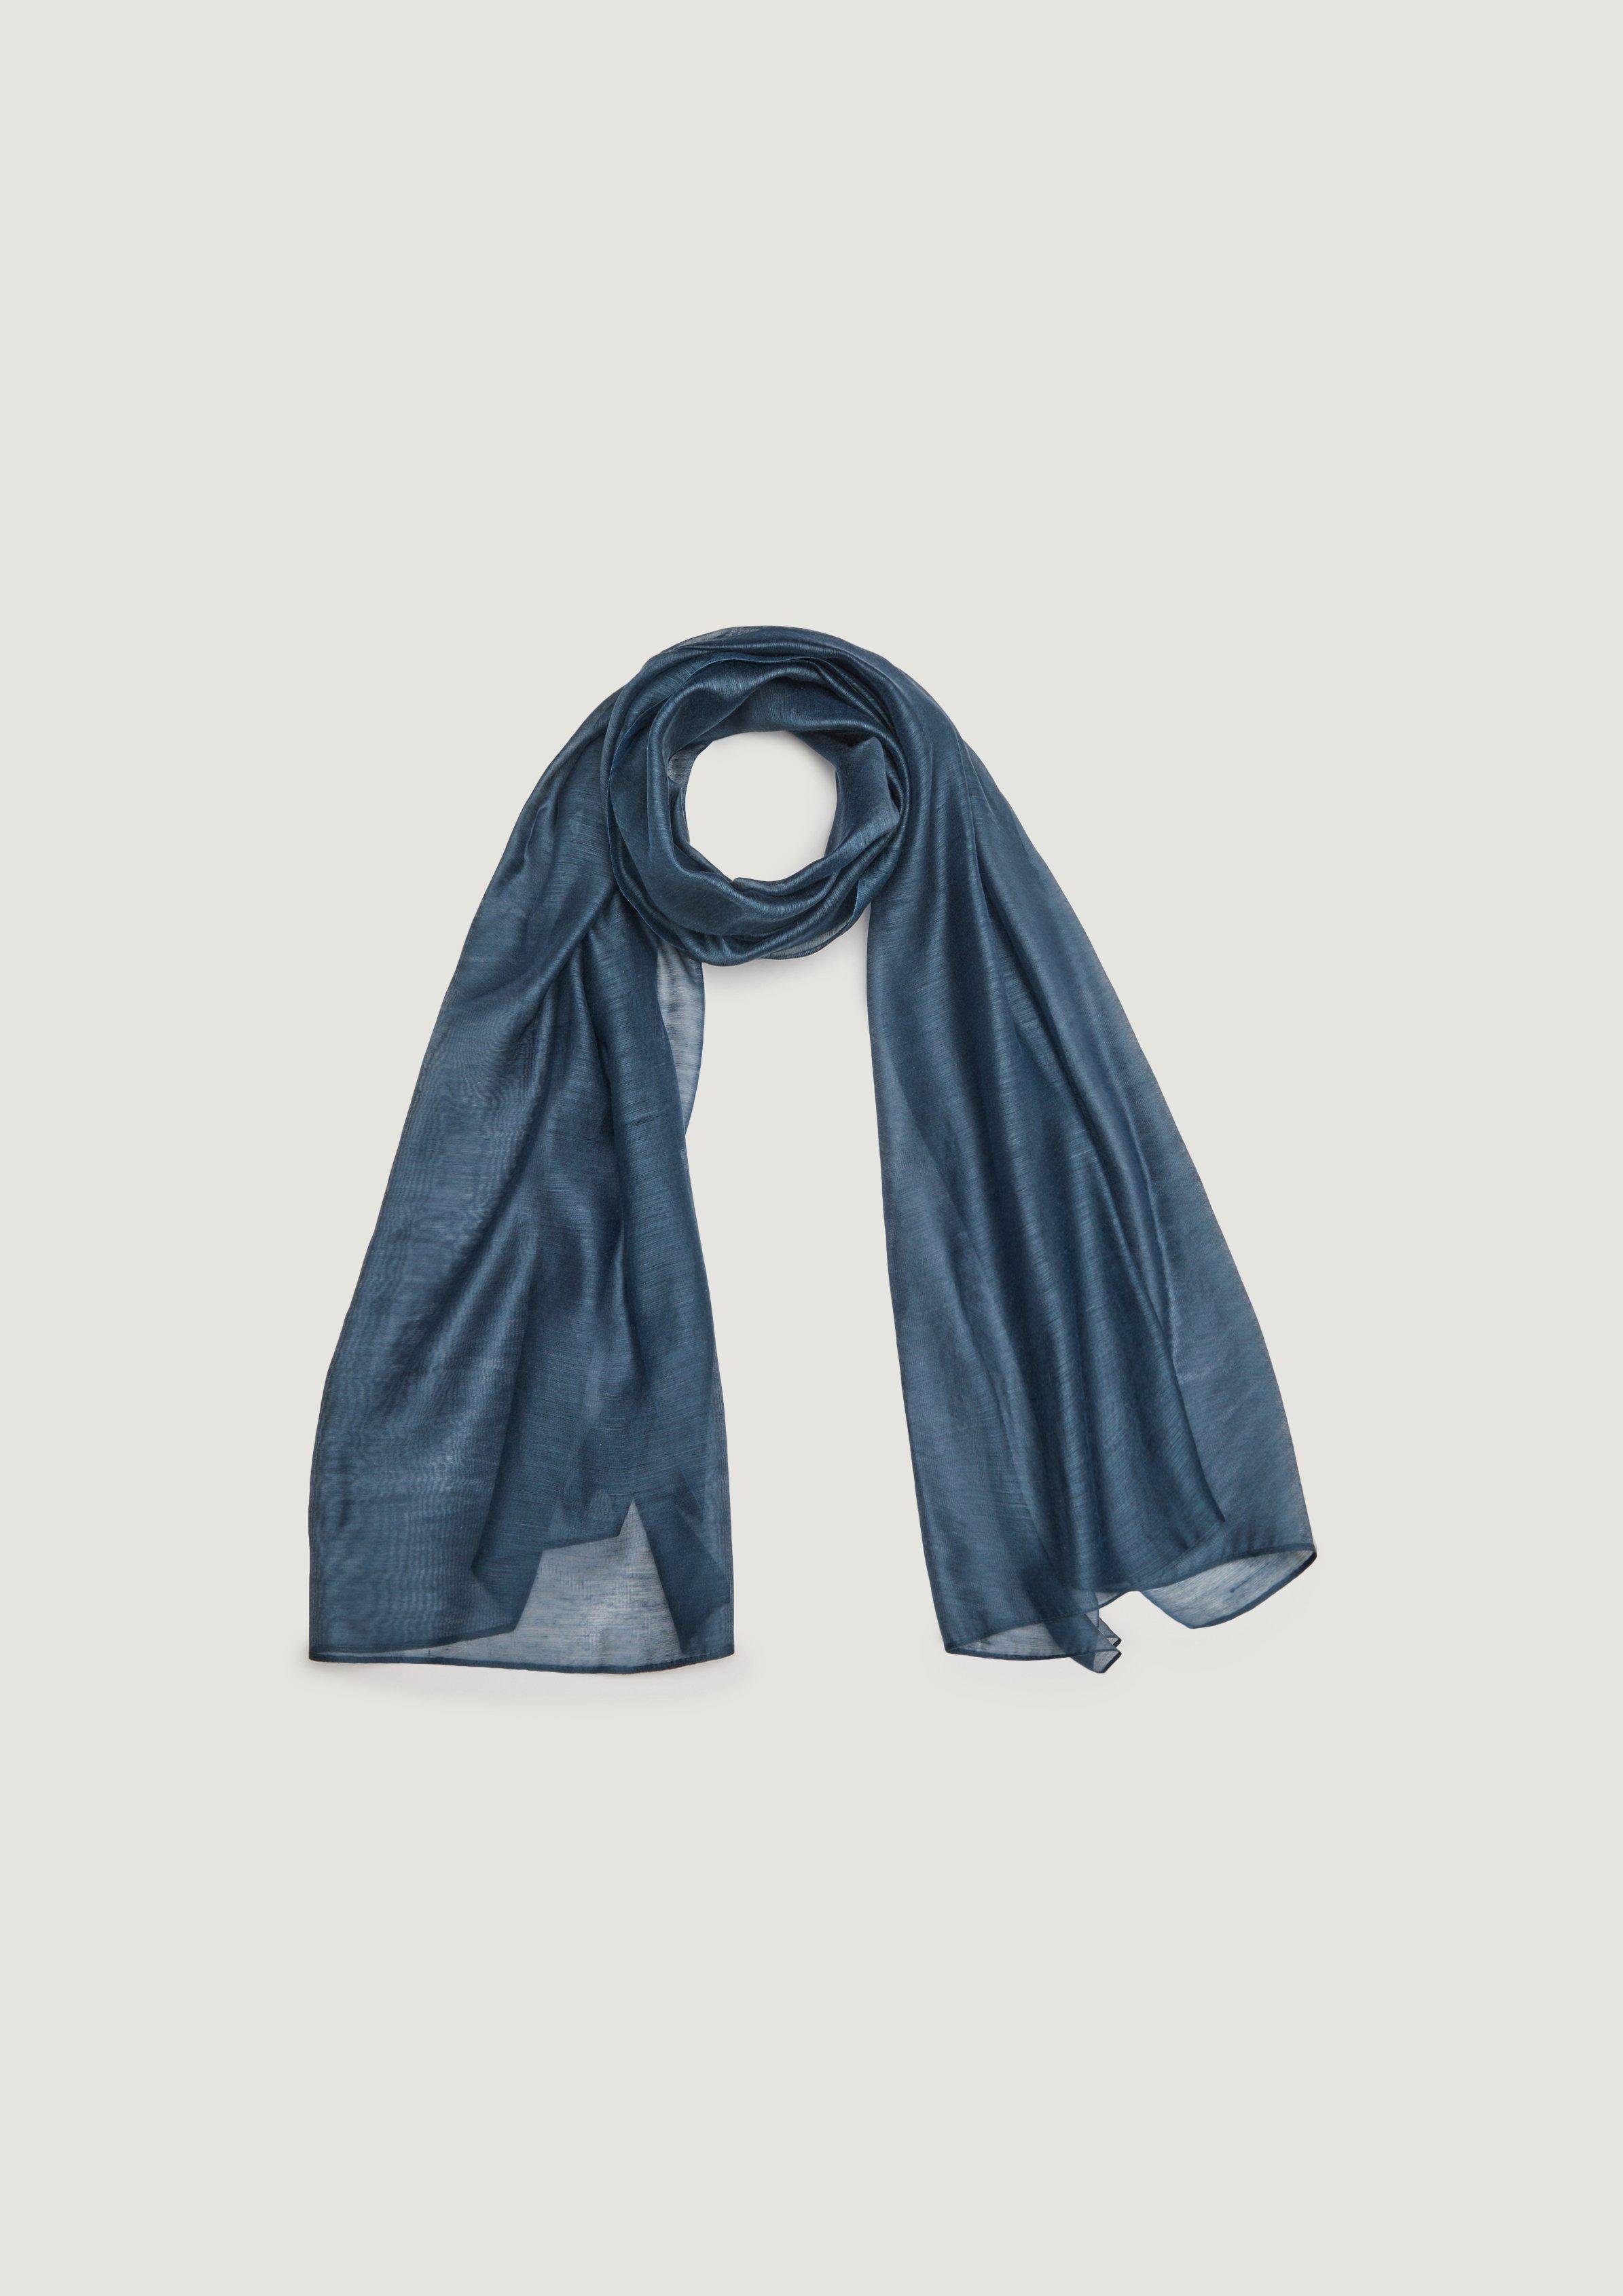 bekannte Marke Comma Halstuch Tuch aus Seidenmix tiefblau